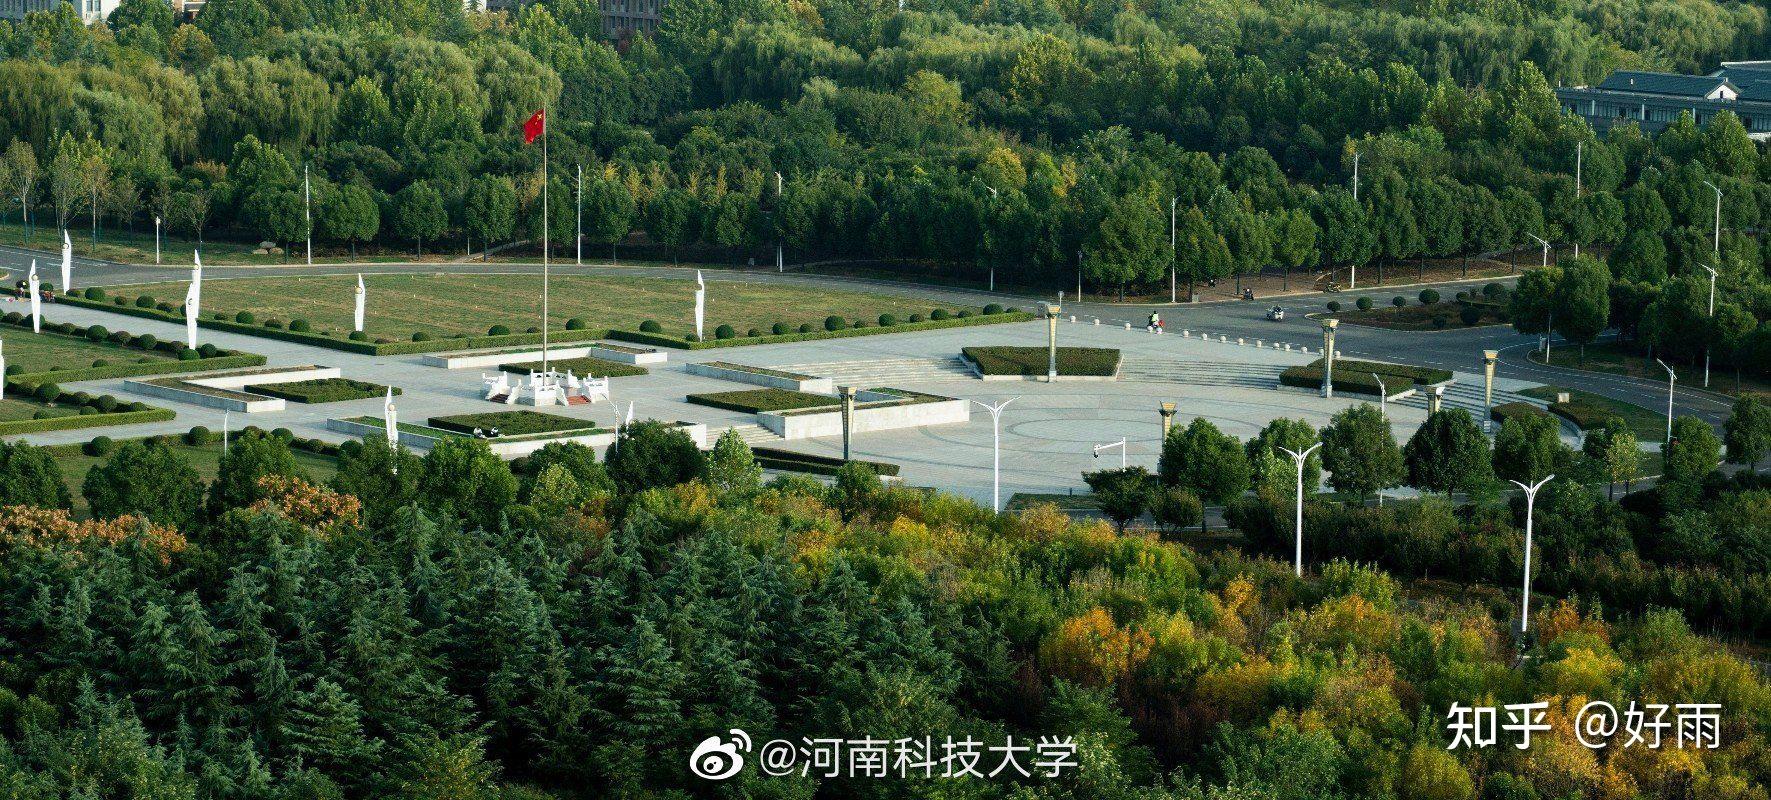 河南科技大学全景图片图片